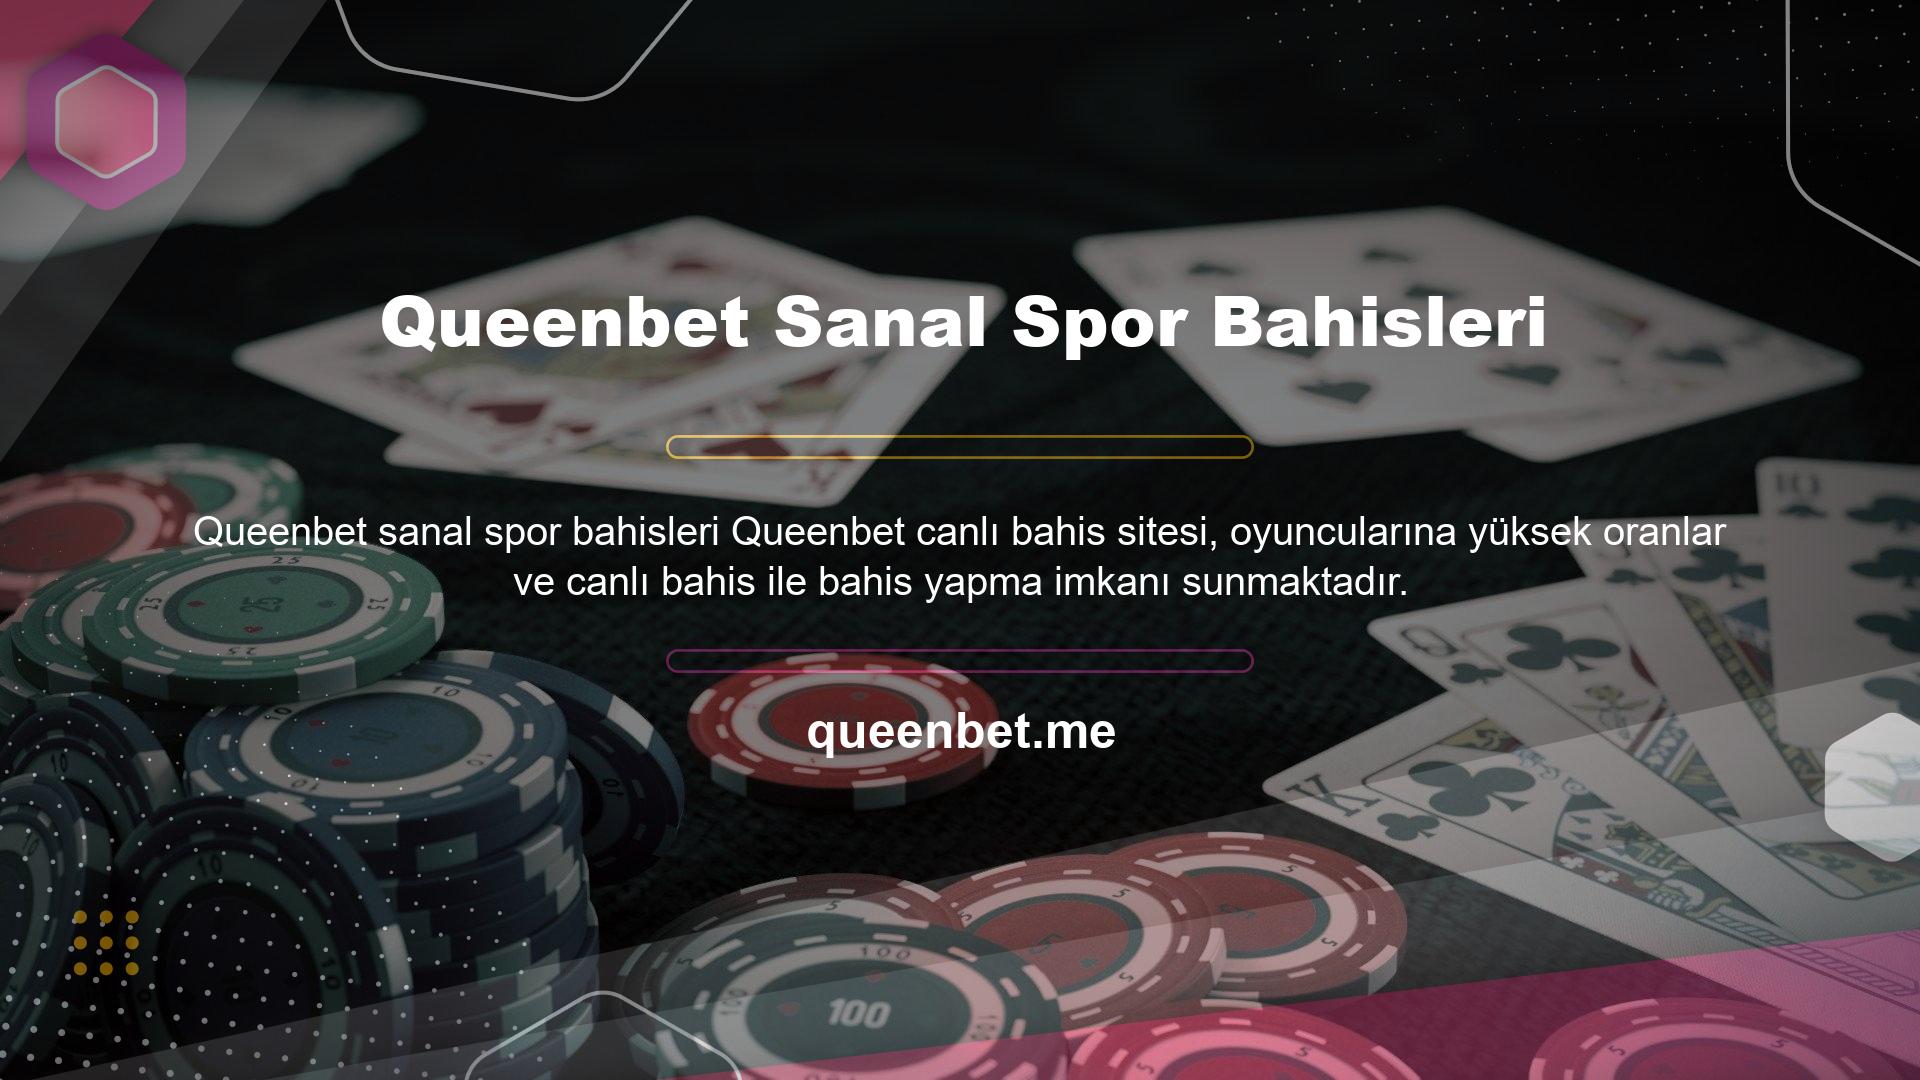 Bunun yanı sıra Queenbet Canlı Casino web sitesinde en yüksek sanal bahis oranları ile sanal bahis seçeneklerine de ulaşabilirsiniz